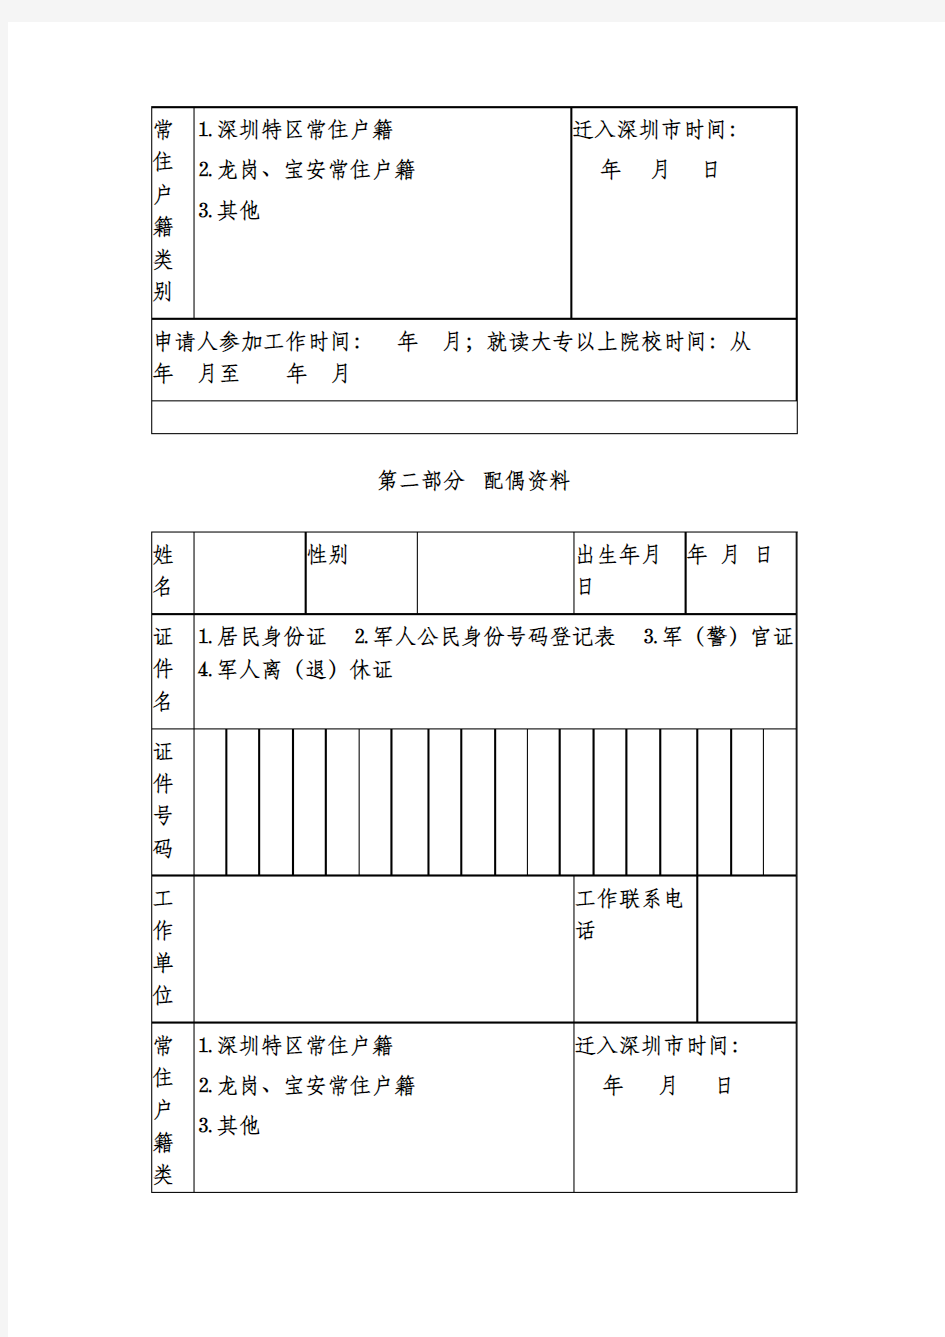 深圳市职工购买政策性住房申请表(非市房产管理部门所属产权)